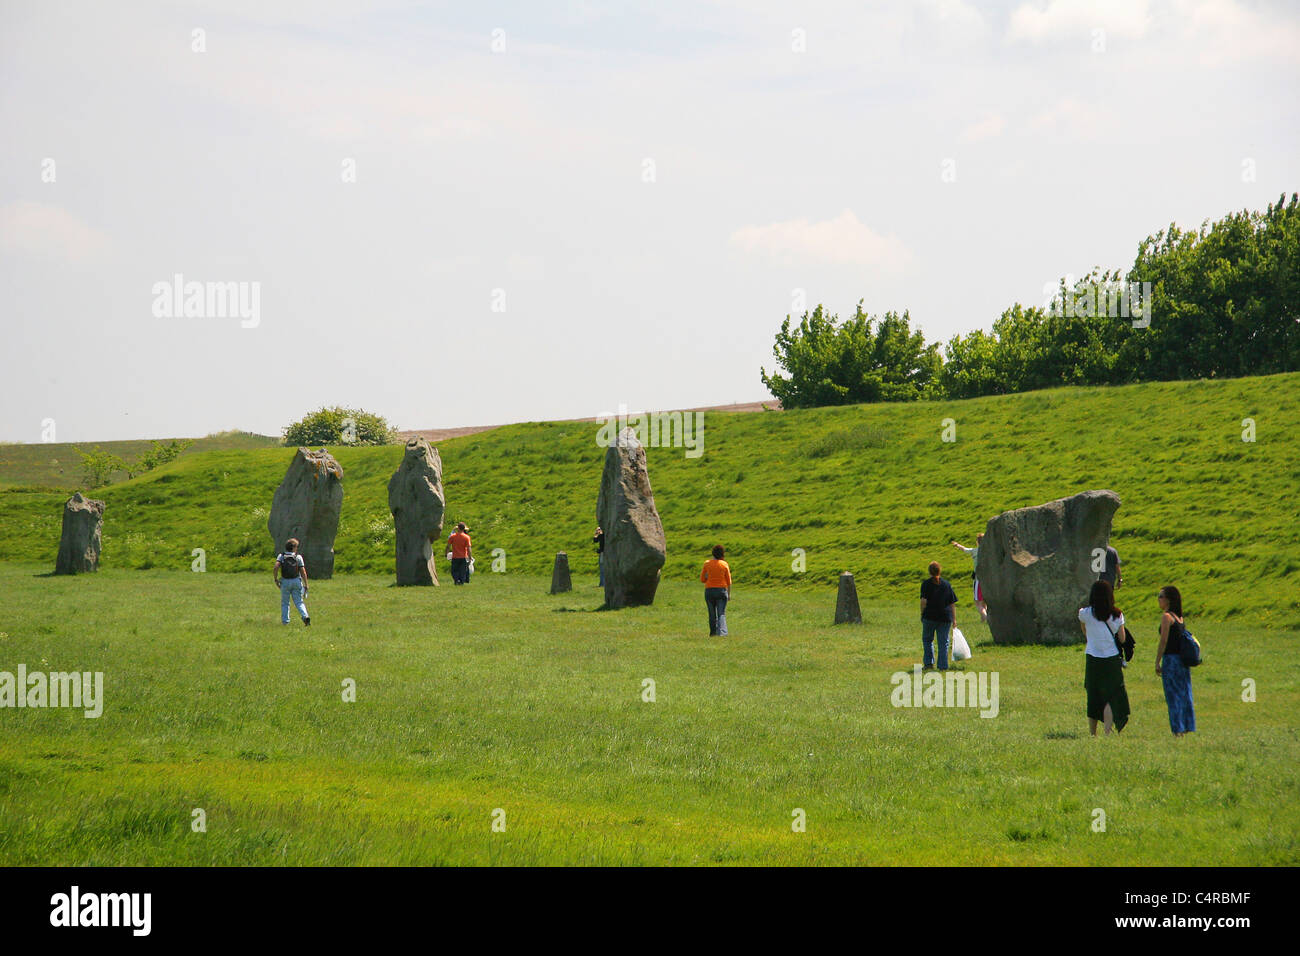 Avebury is a World Heritage Site similar to Stonehenge, Avebury, England Stock Photo